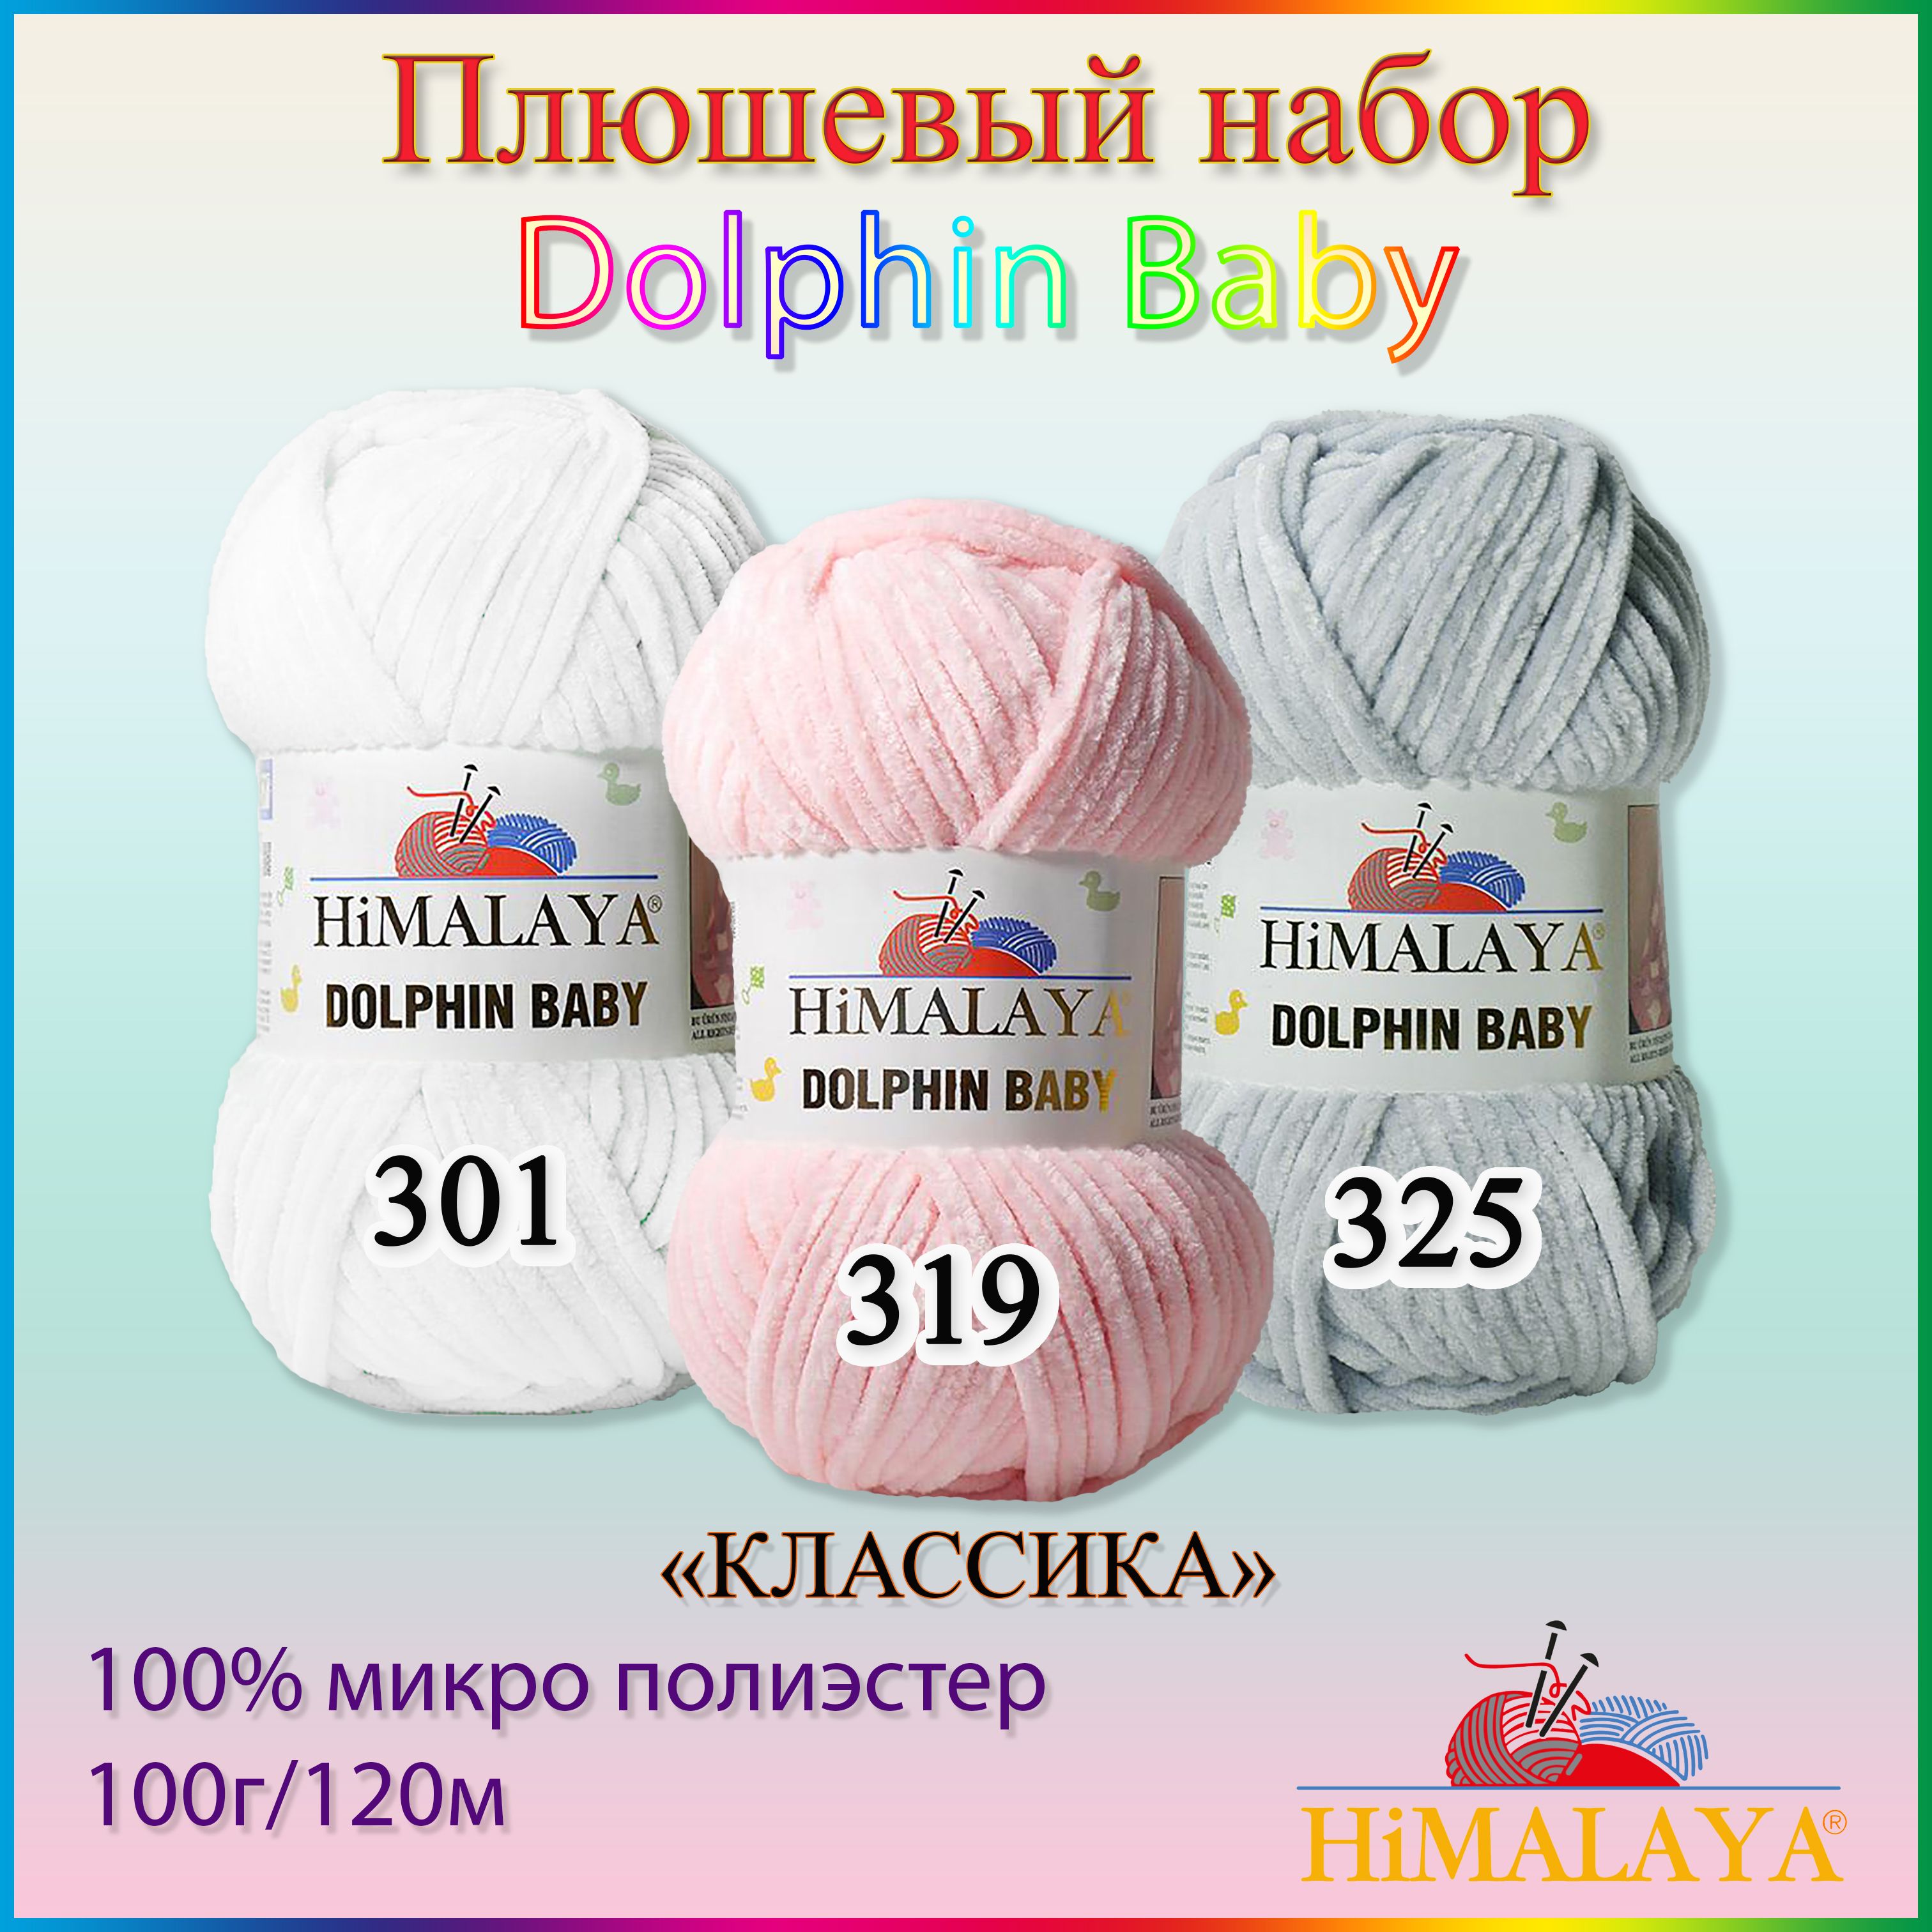 Himalaya dolphin baby 80313 - купить по выгодной цене